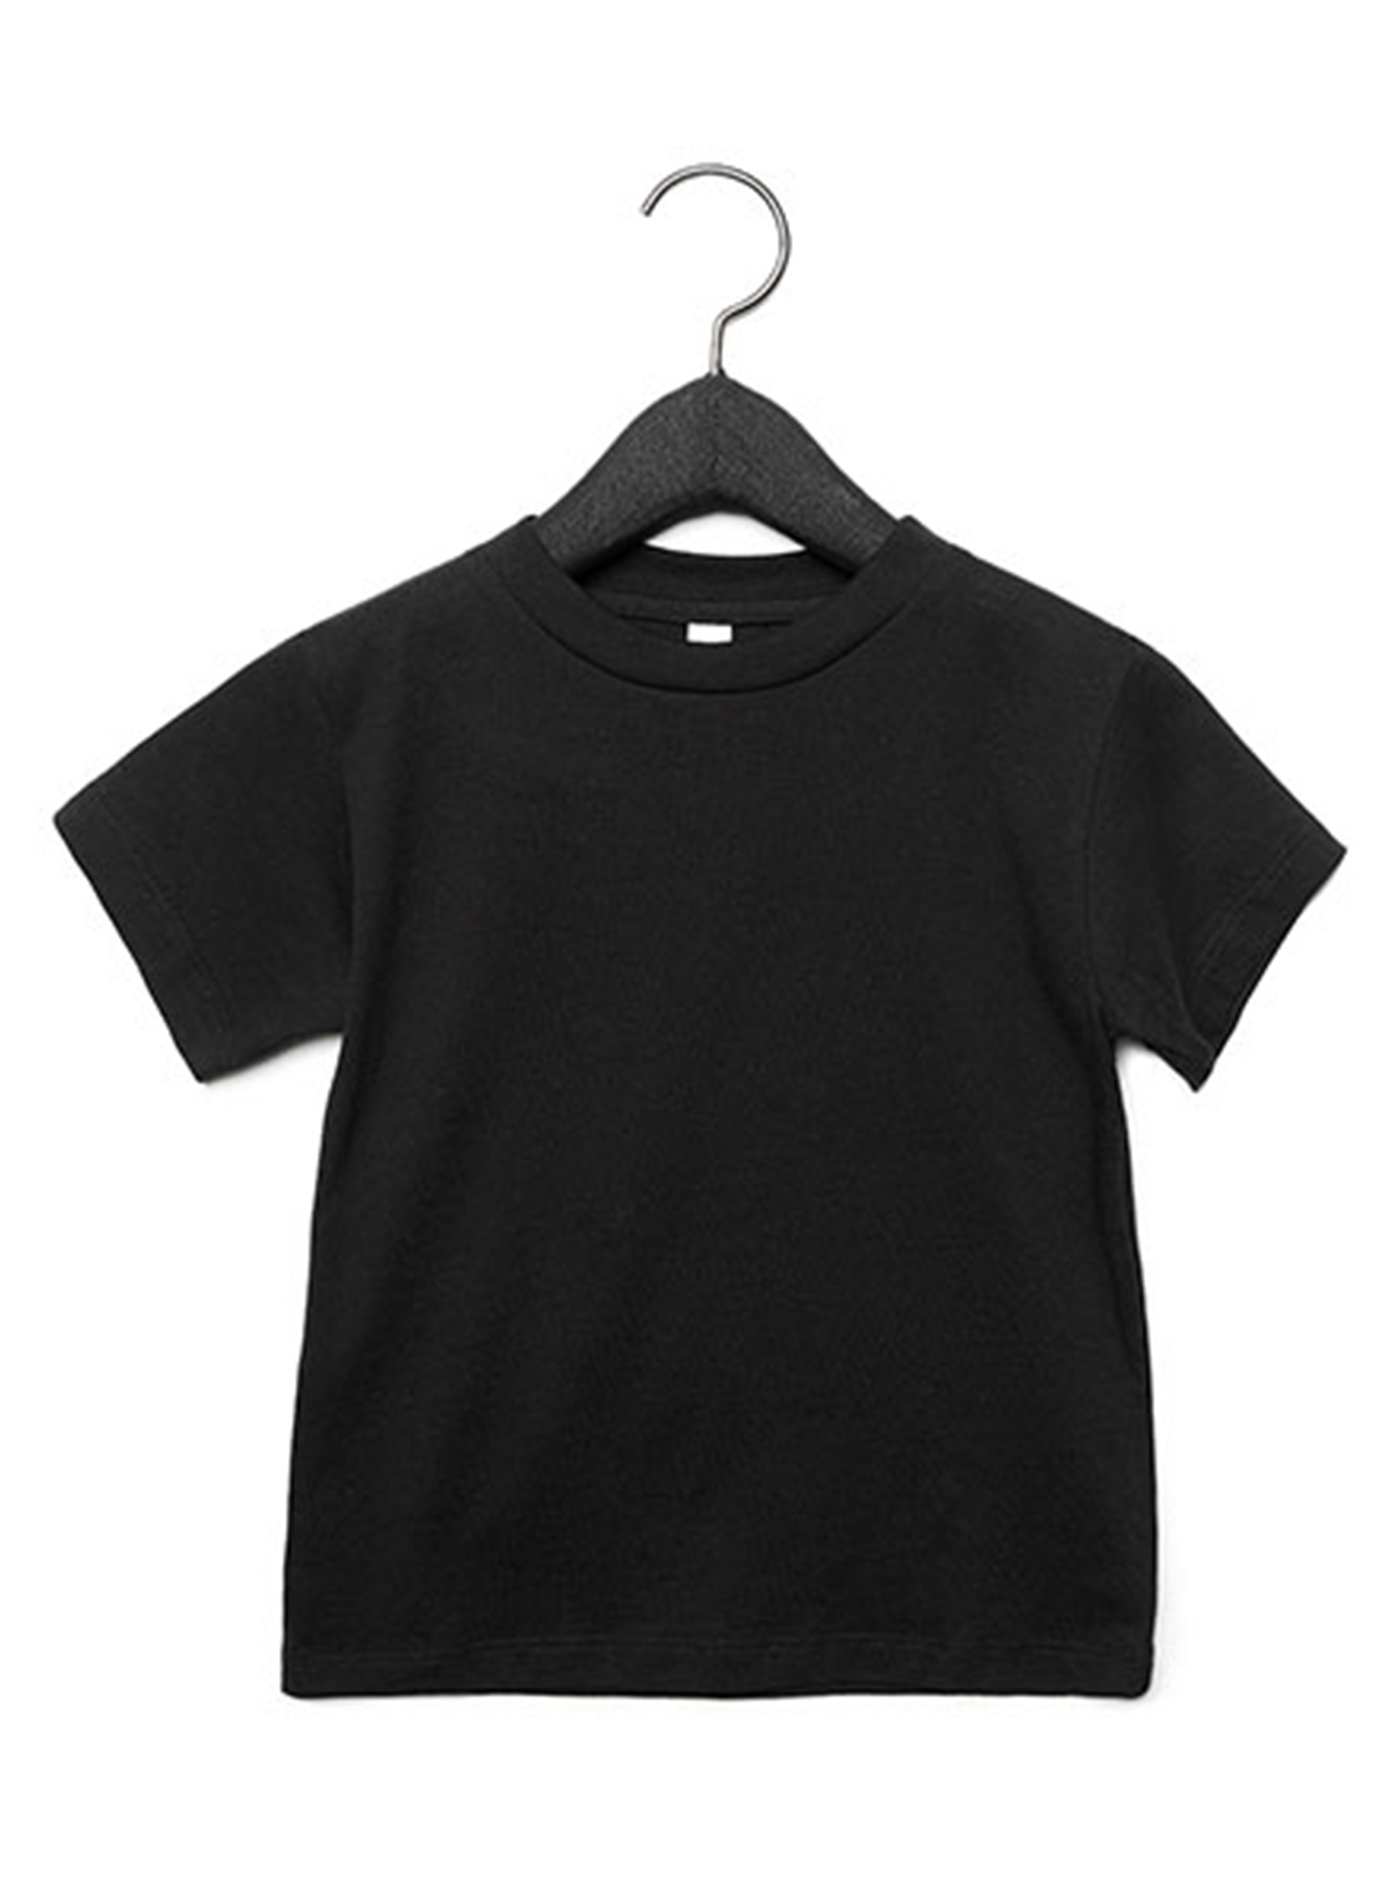 Dětské tričko Bella + Canvas Jersey - černá 3T (98)